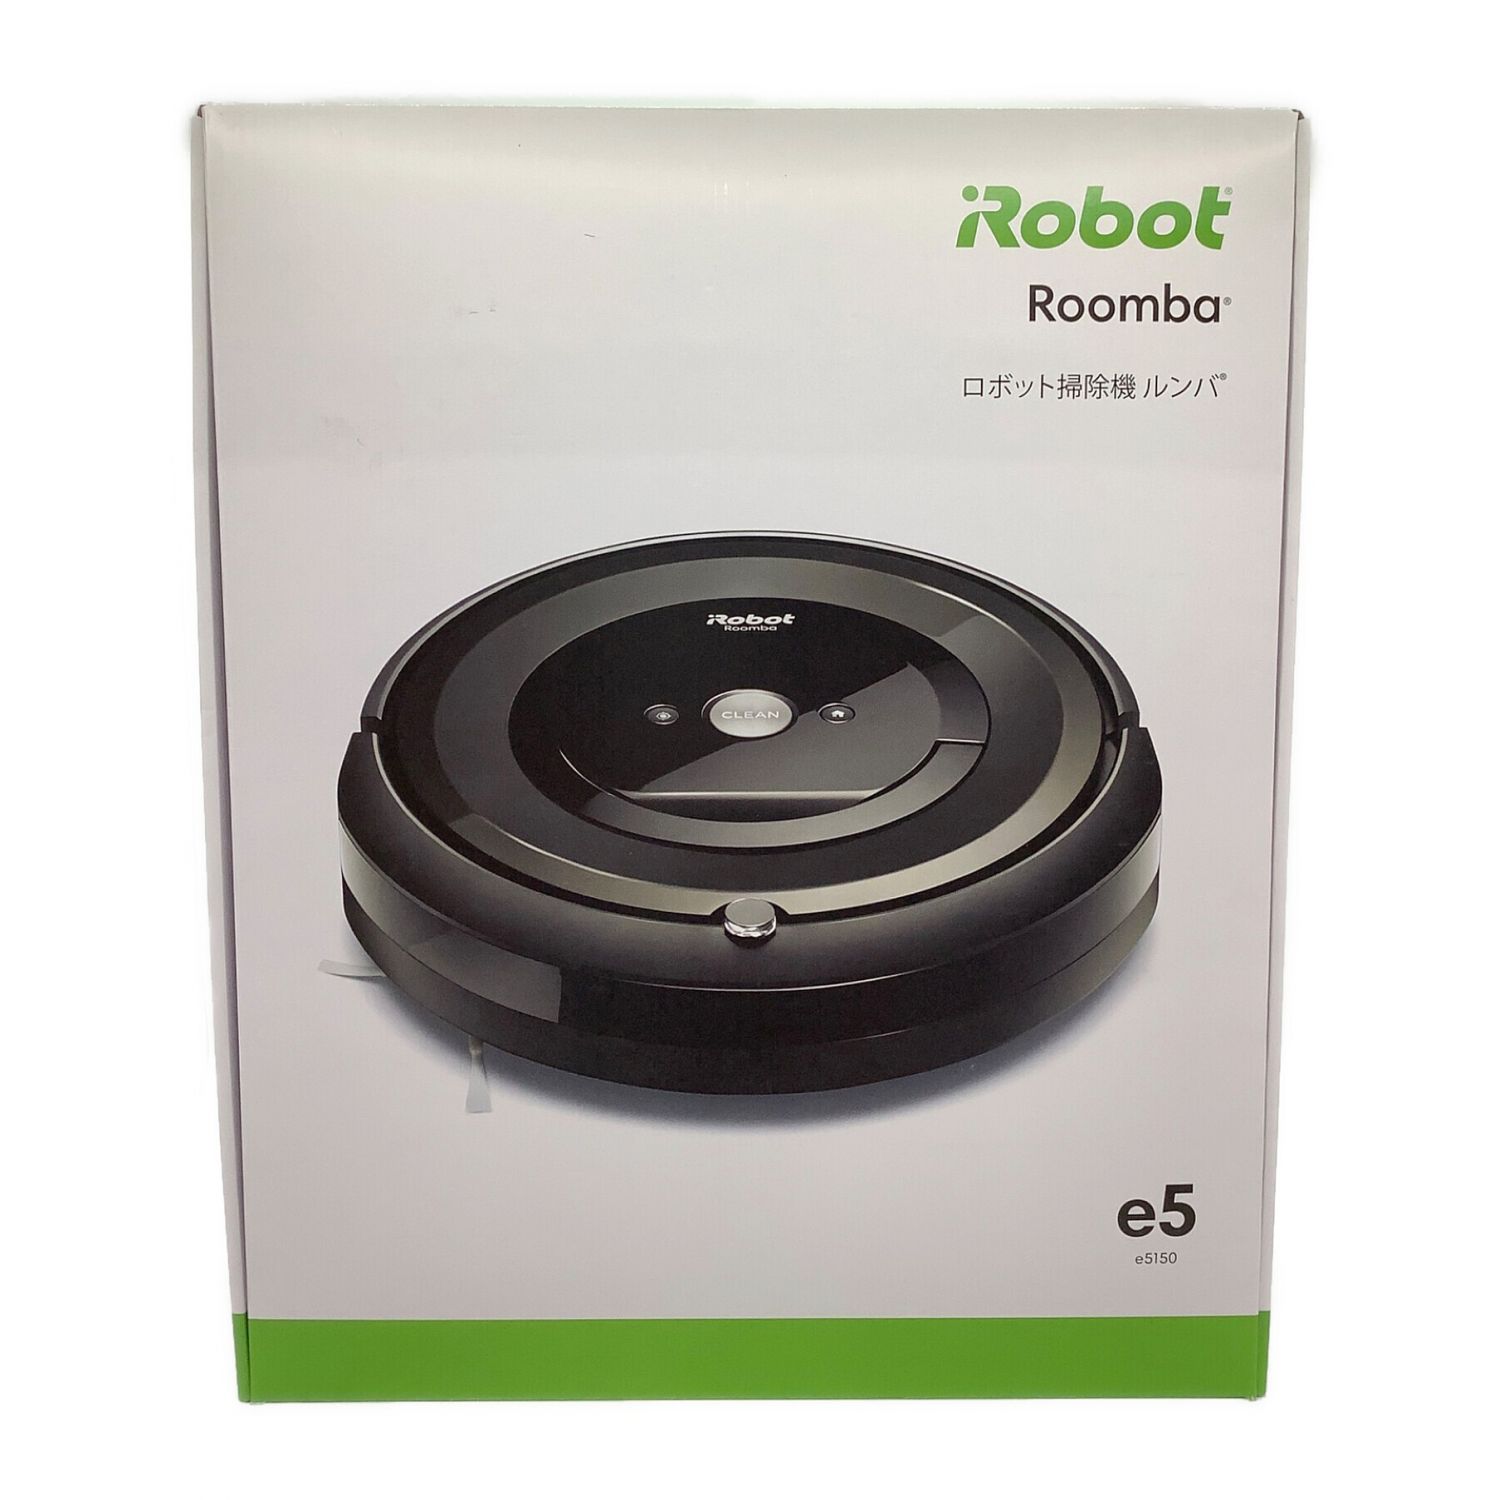 ルンバe5 ロボット掃除機 e515060 iRobot新品未使用品 | www.eintauto.com